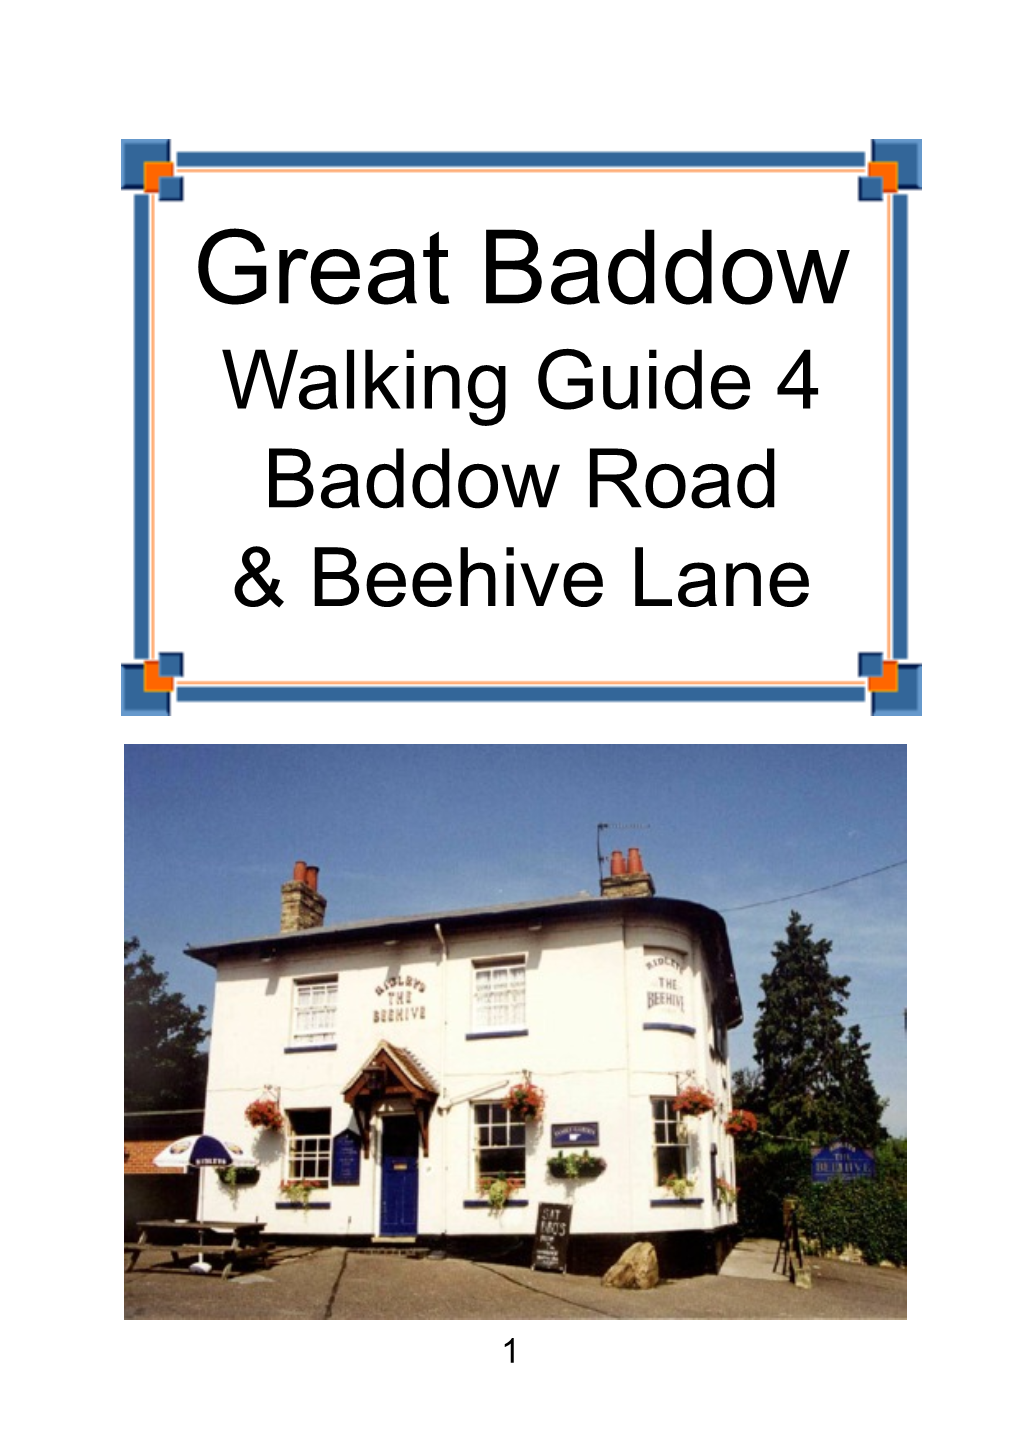 Great Baddow Walking Guide 4 Baddow Road & Beehive Lane